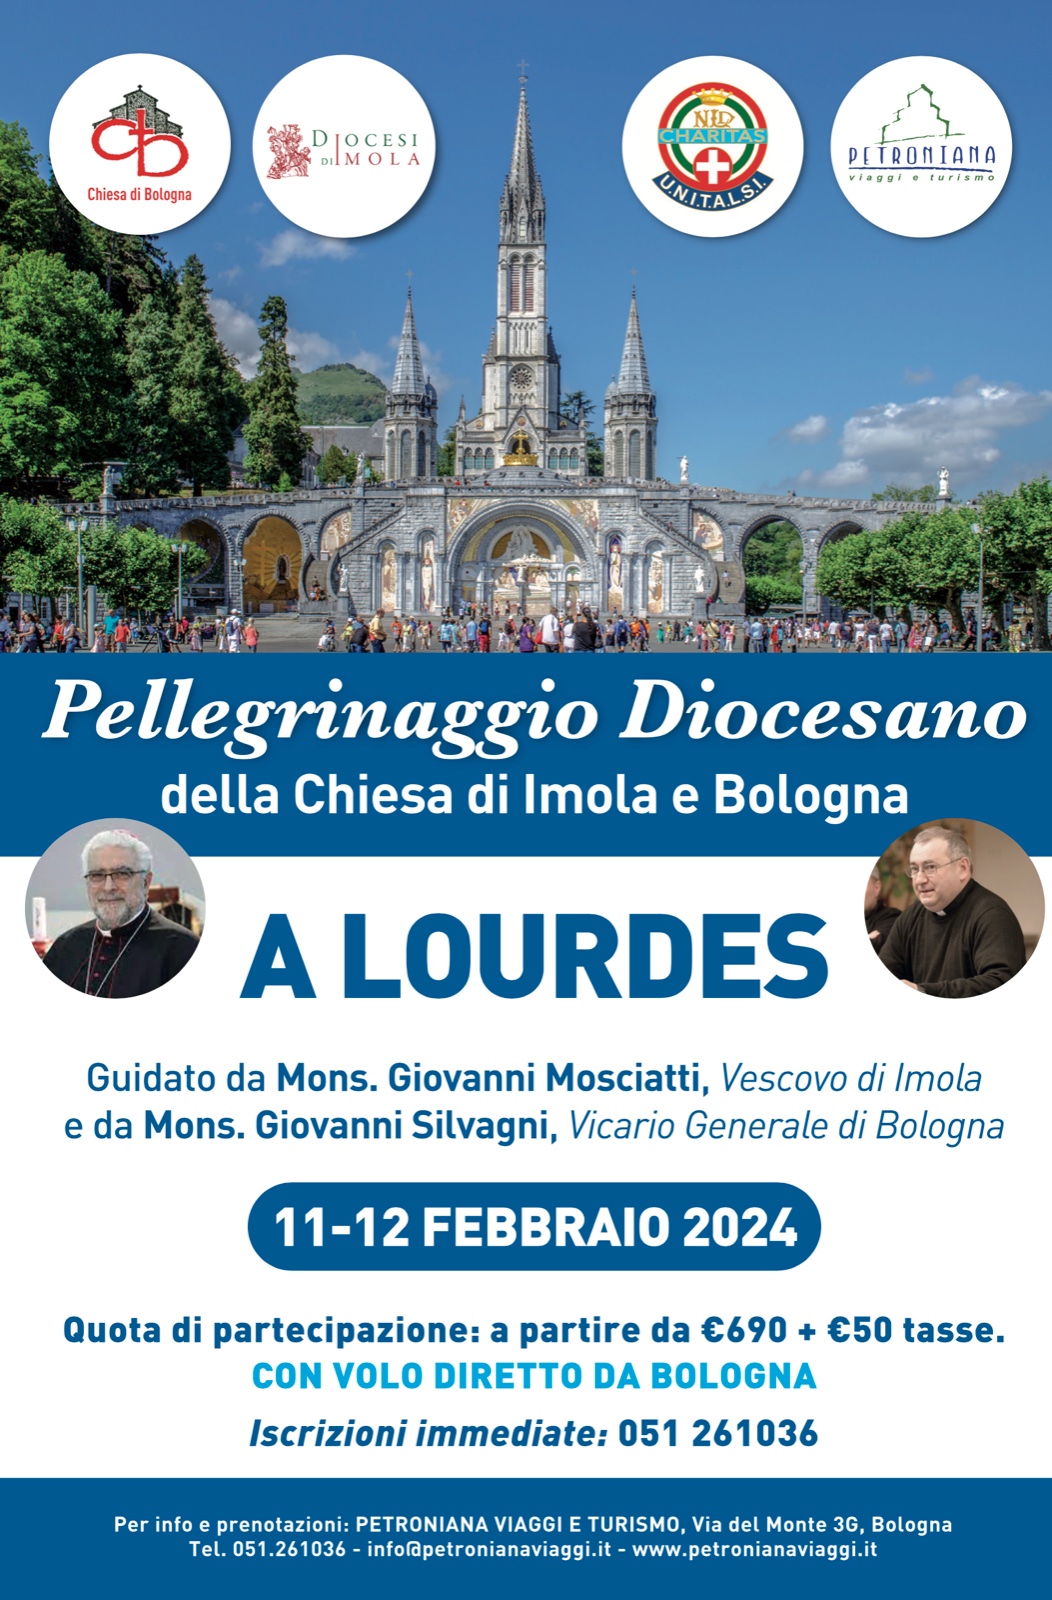 Lourdes – Pellegrinaggio Diocesano della Chiesa di Imola e Bologna